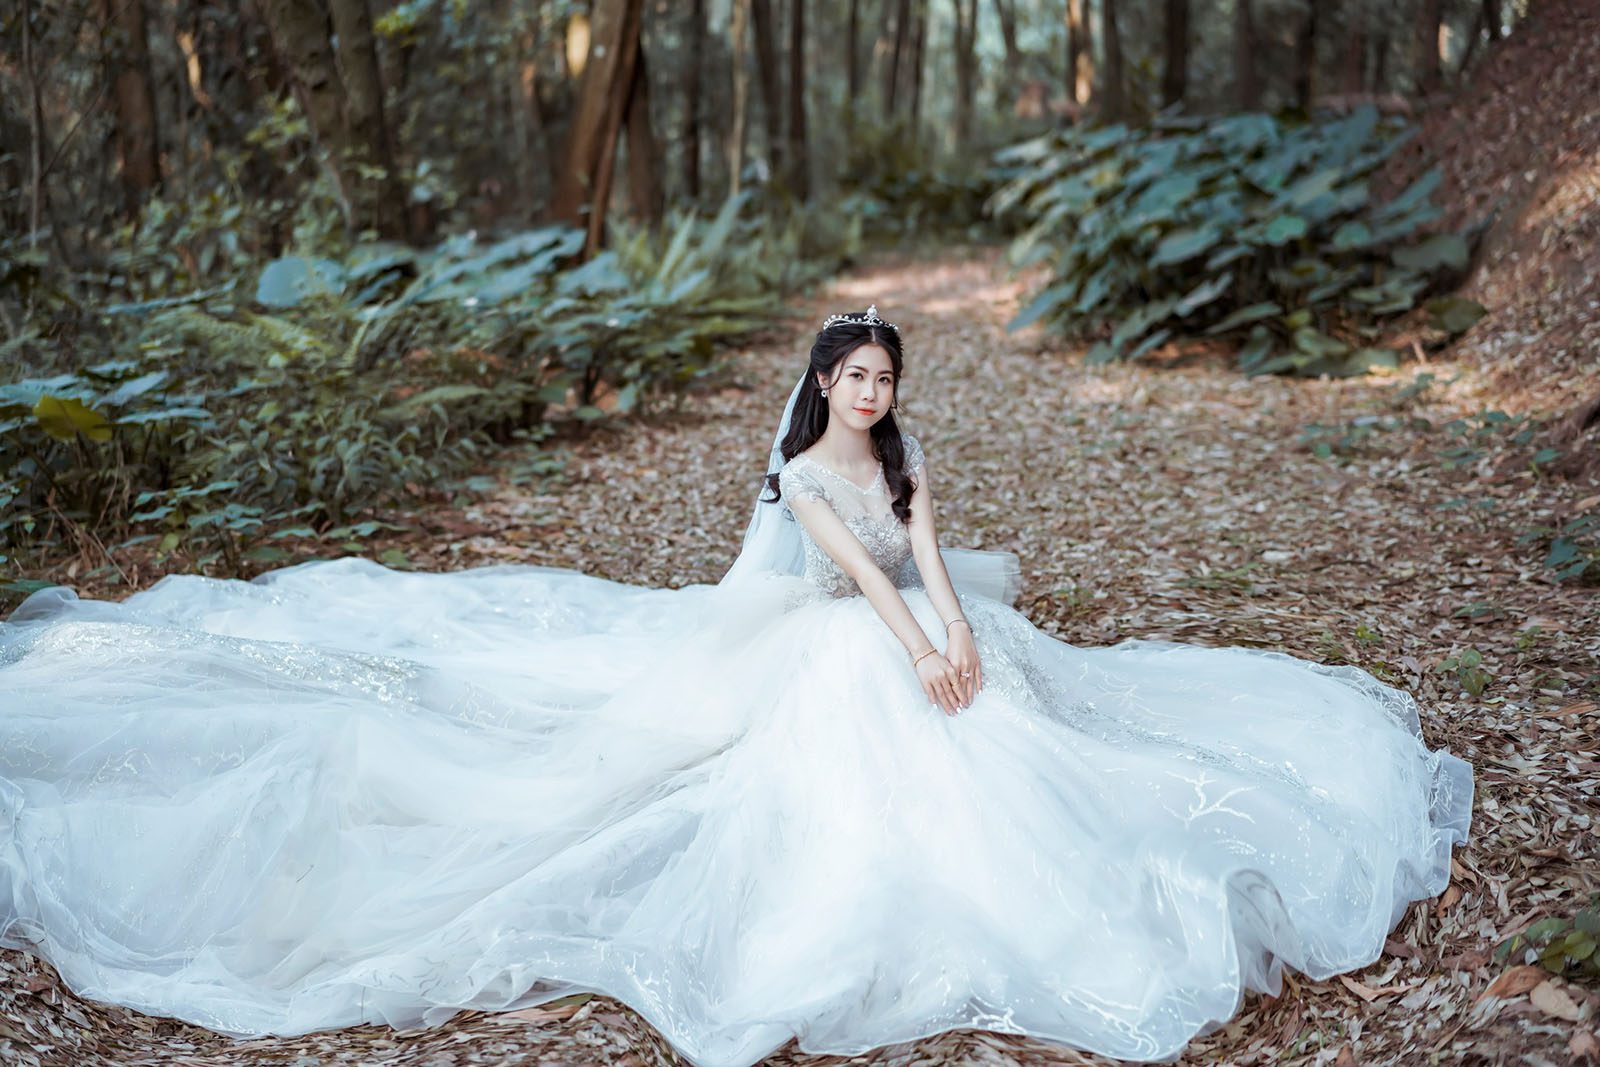 Vương miện cô dâu – phụ kiện trang sức giúp nàng dâu thêm xinh đẹp, tỏa sáng